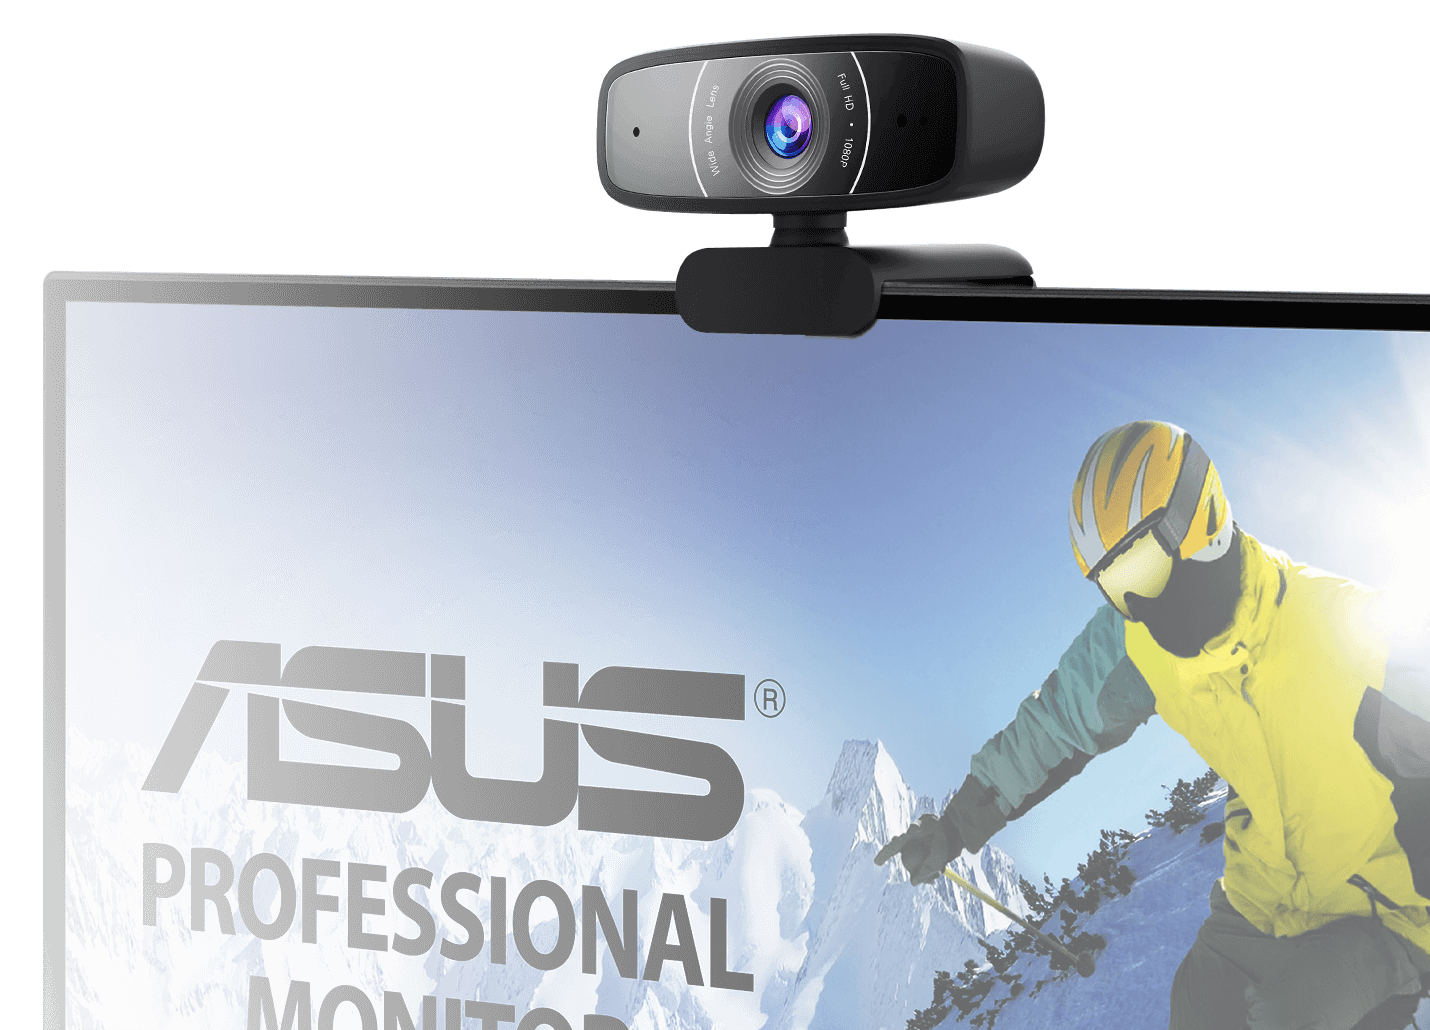 Webcam Asus C3 FullHD 1080p